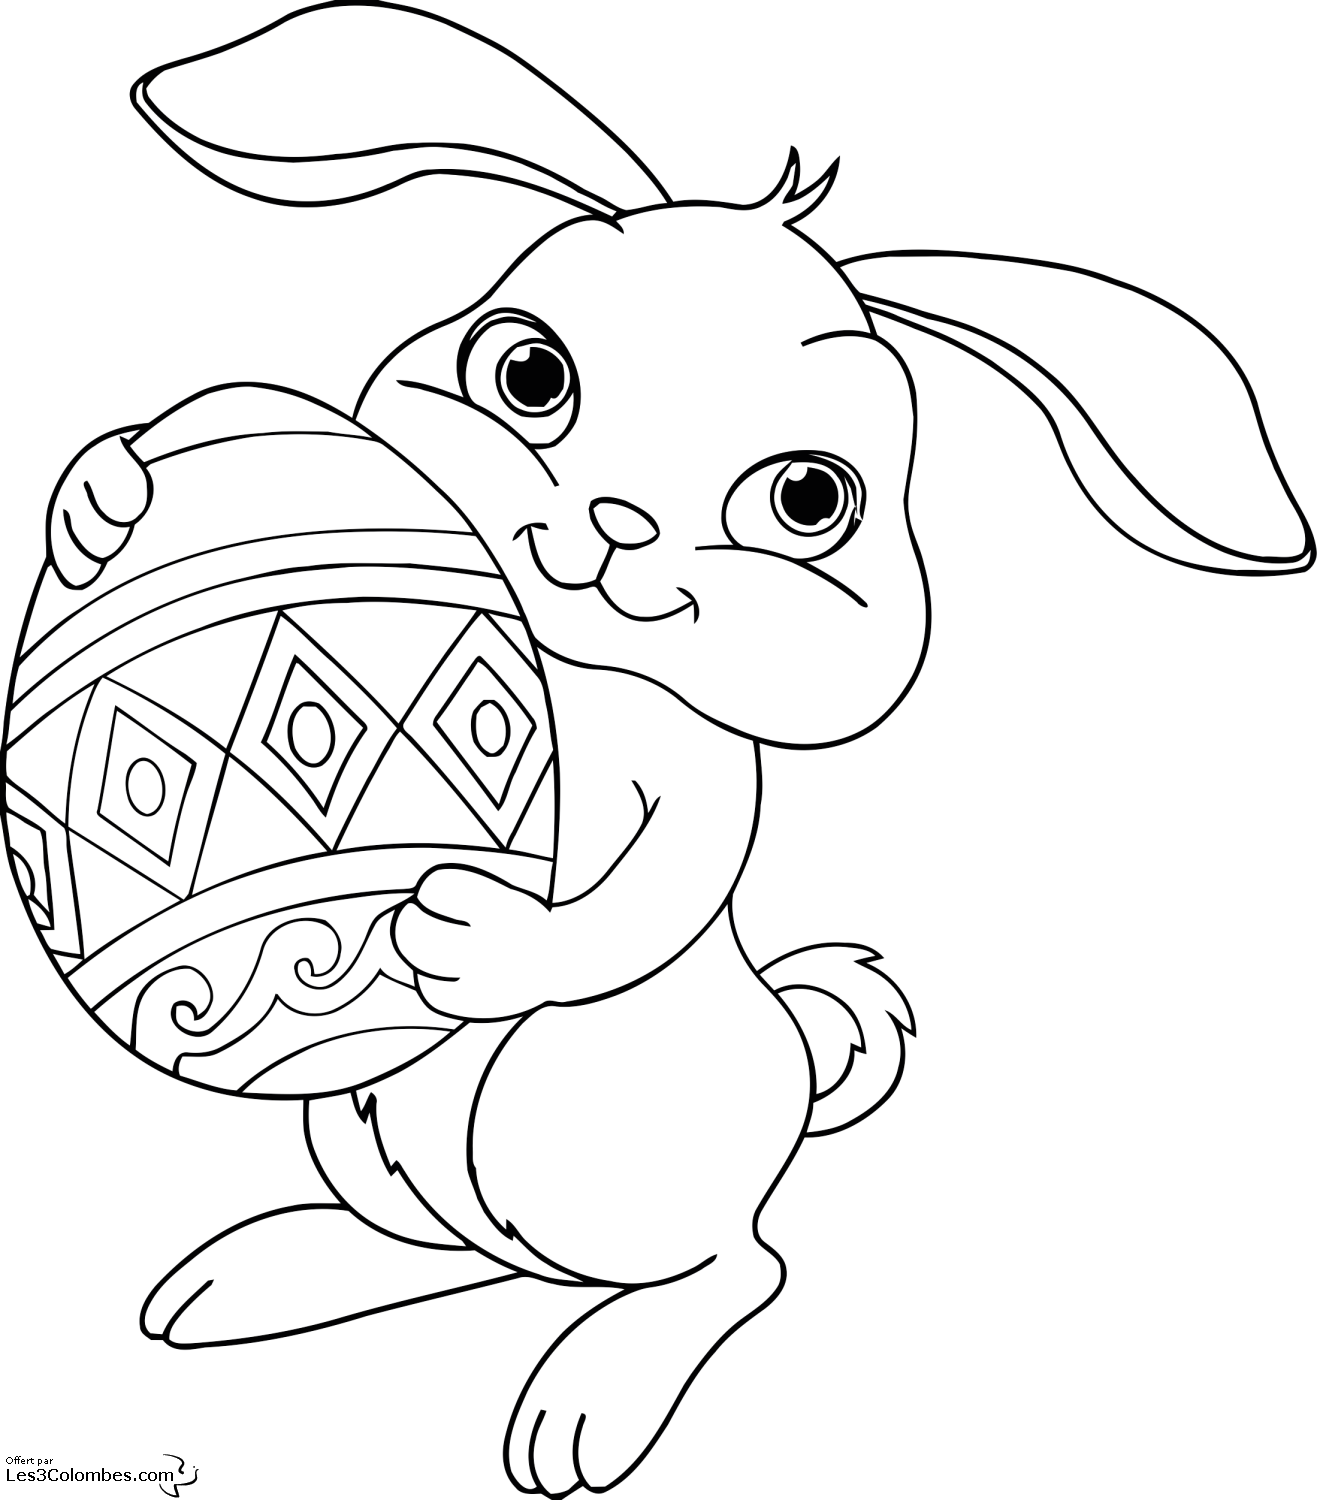 Un lapin en train de peindre des oeufs pour Pâques